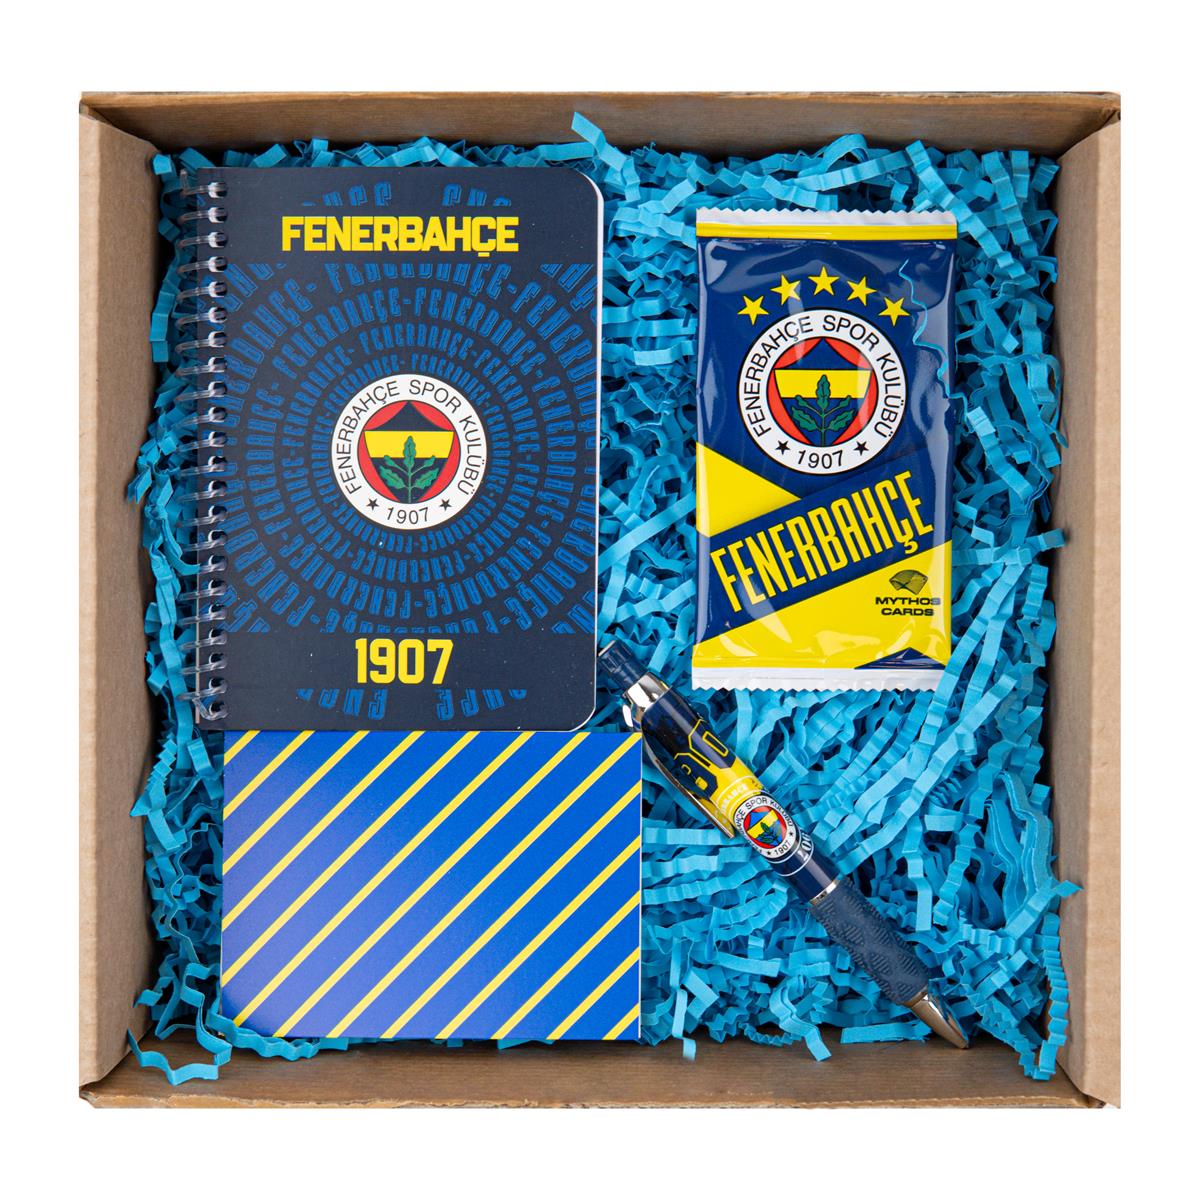 Fenerbahçe Sarı Kanarya Taraftar Kutusu Özel Hediye Kutusu | Köln Kütüphane